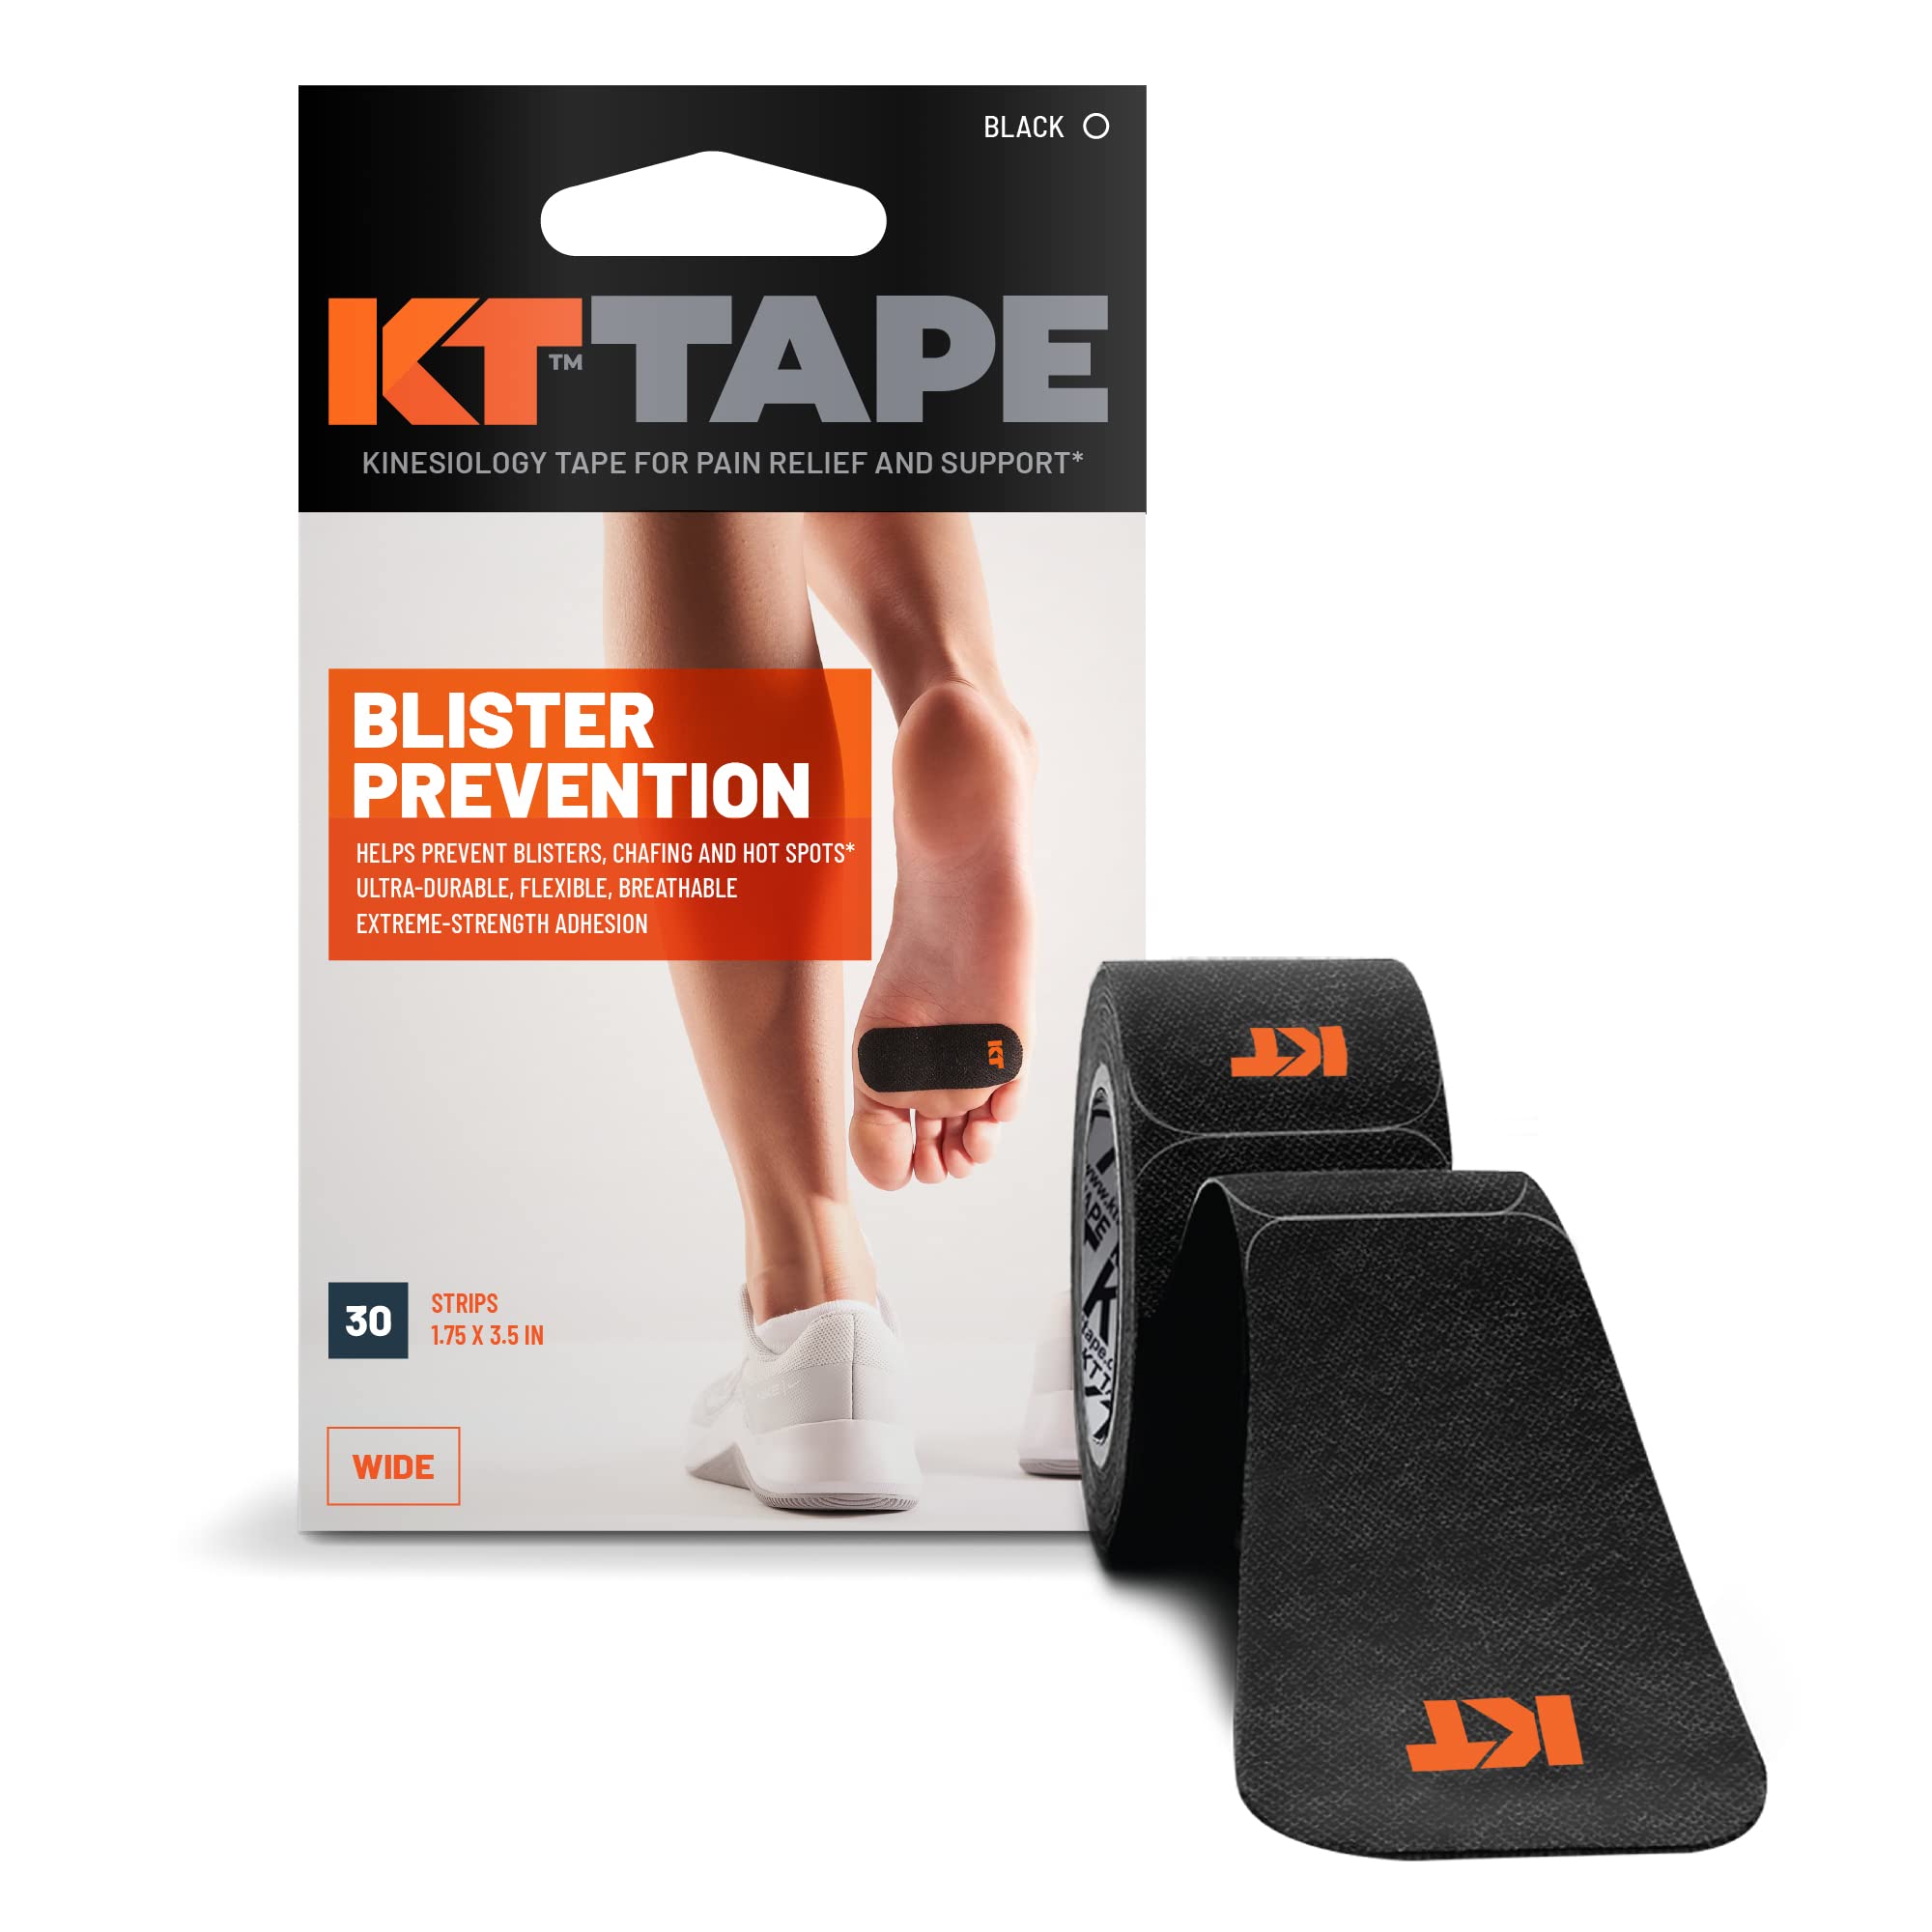 KT Tape, Blister Prevention Tape, 30 Count, 3.5